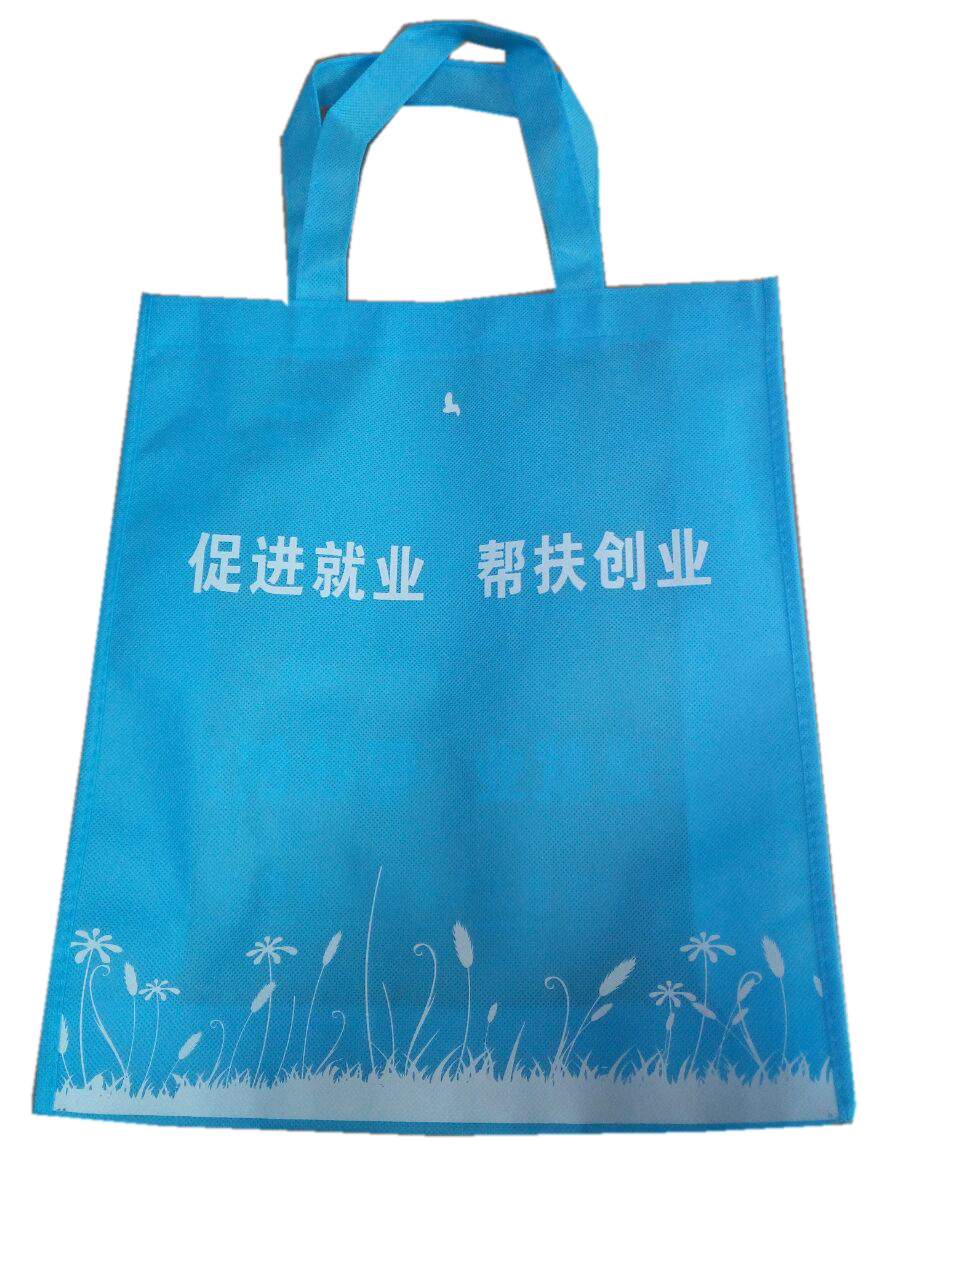 惠州手袋厂专业加工定制无纺布环保袋 展会用广告宣传袋A4尺寸可印LOGO